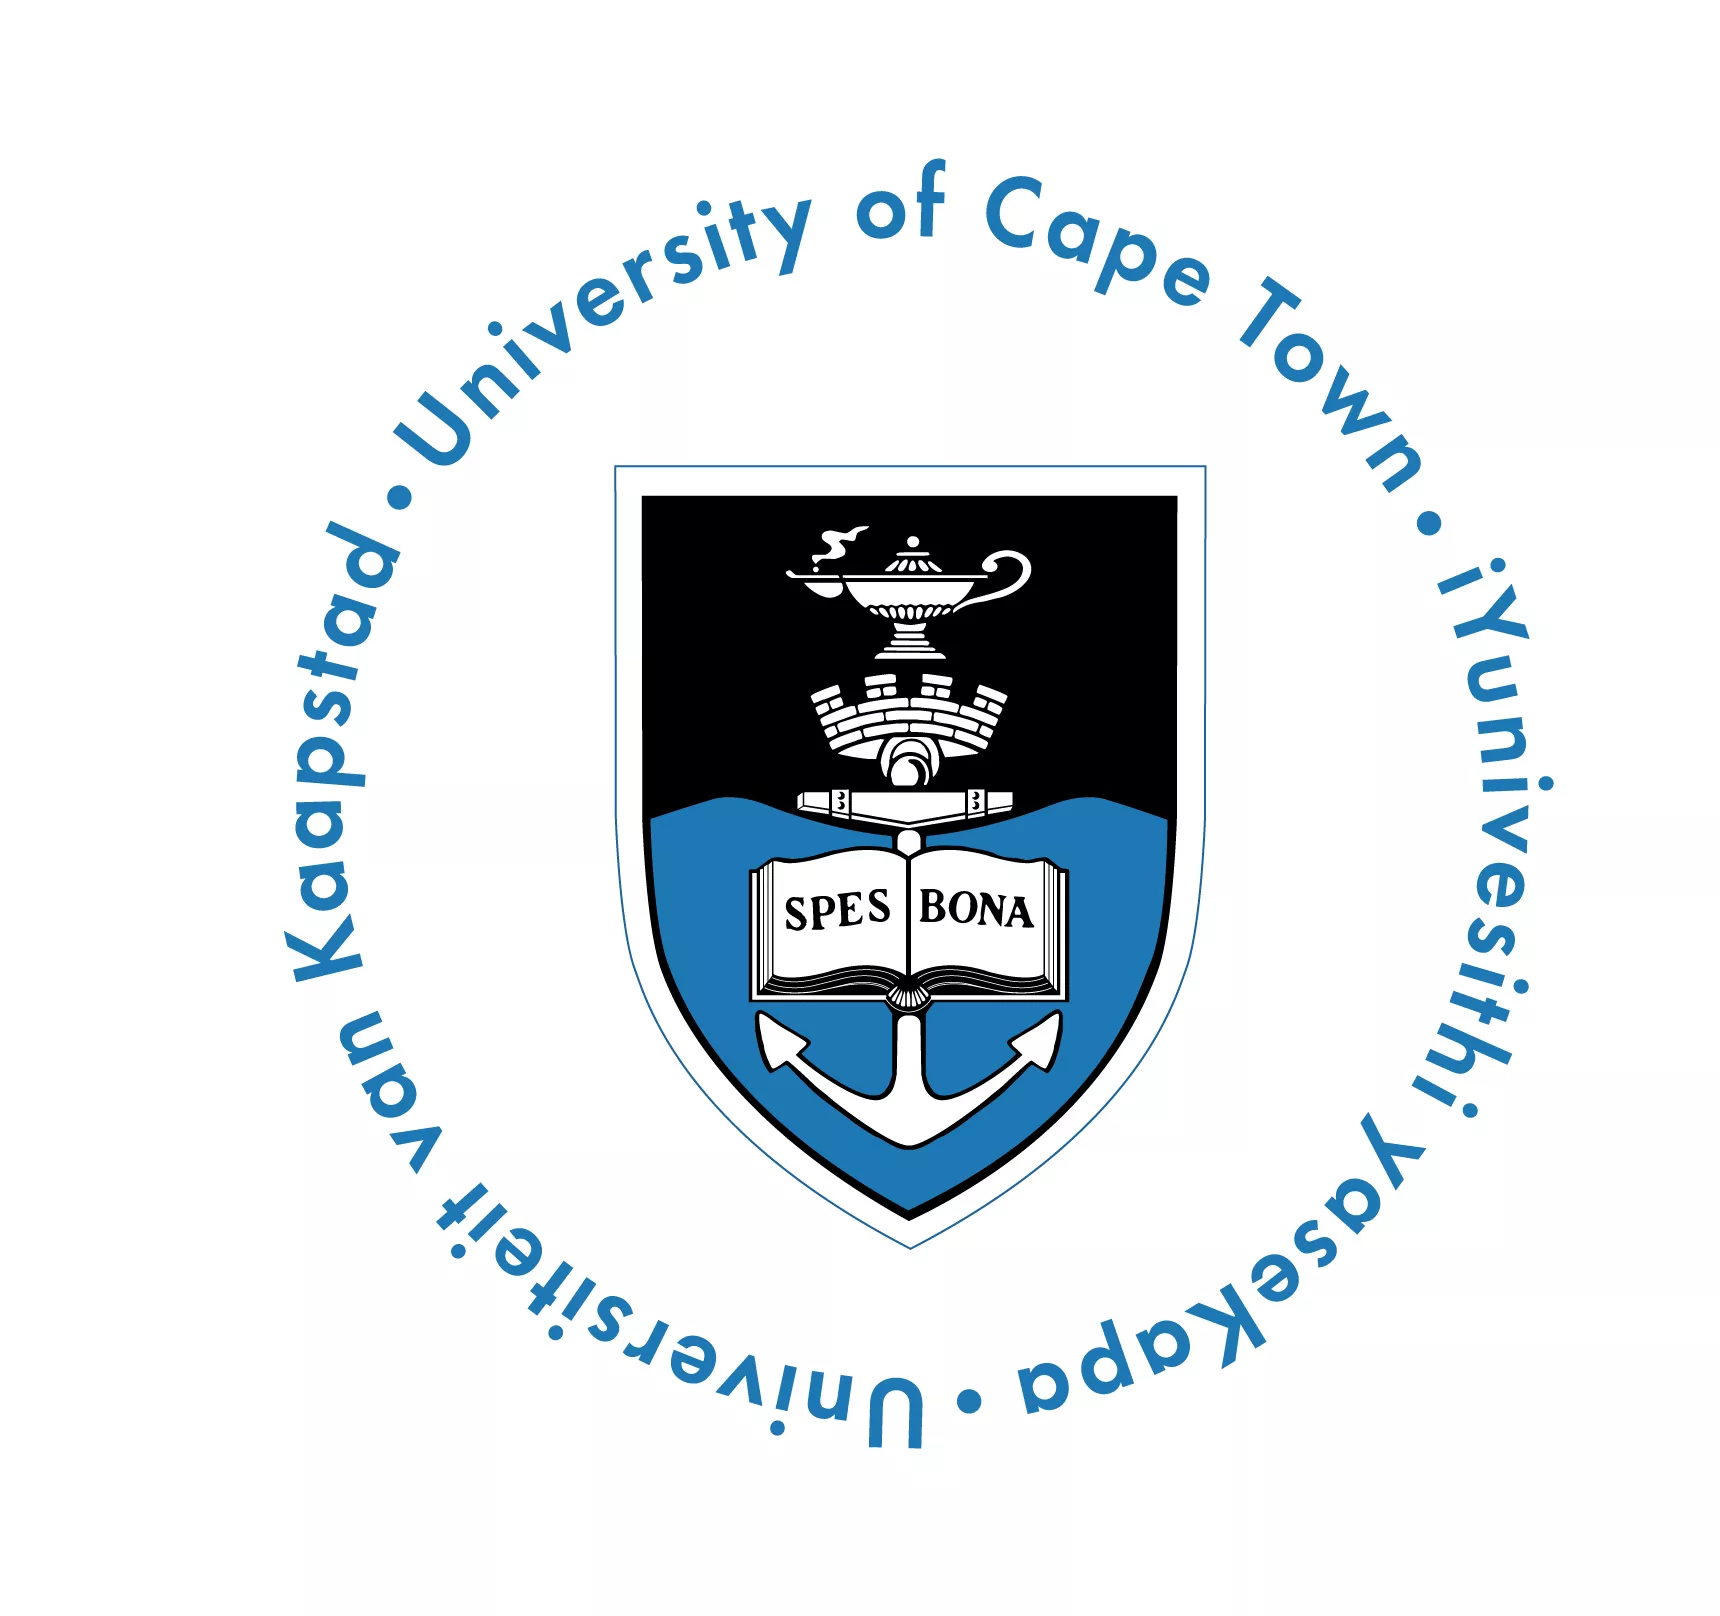 Bourses d’étude Klaus-Jürgen Bathe – Programme de leadership pour les étudiants de premier cycle 2018 à l’Université du Cap en Afrique du Sud